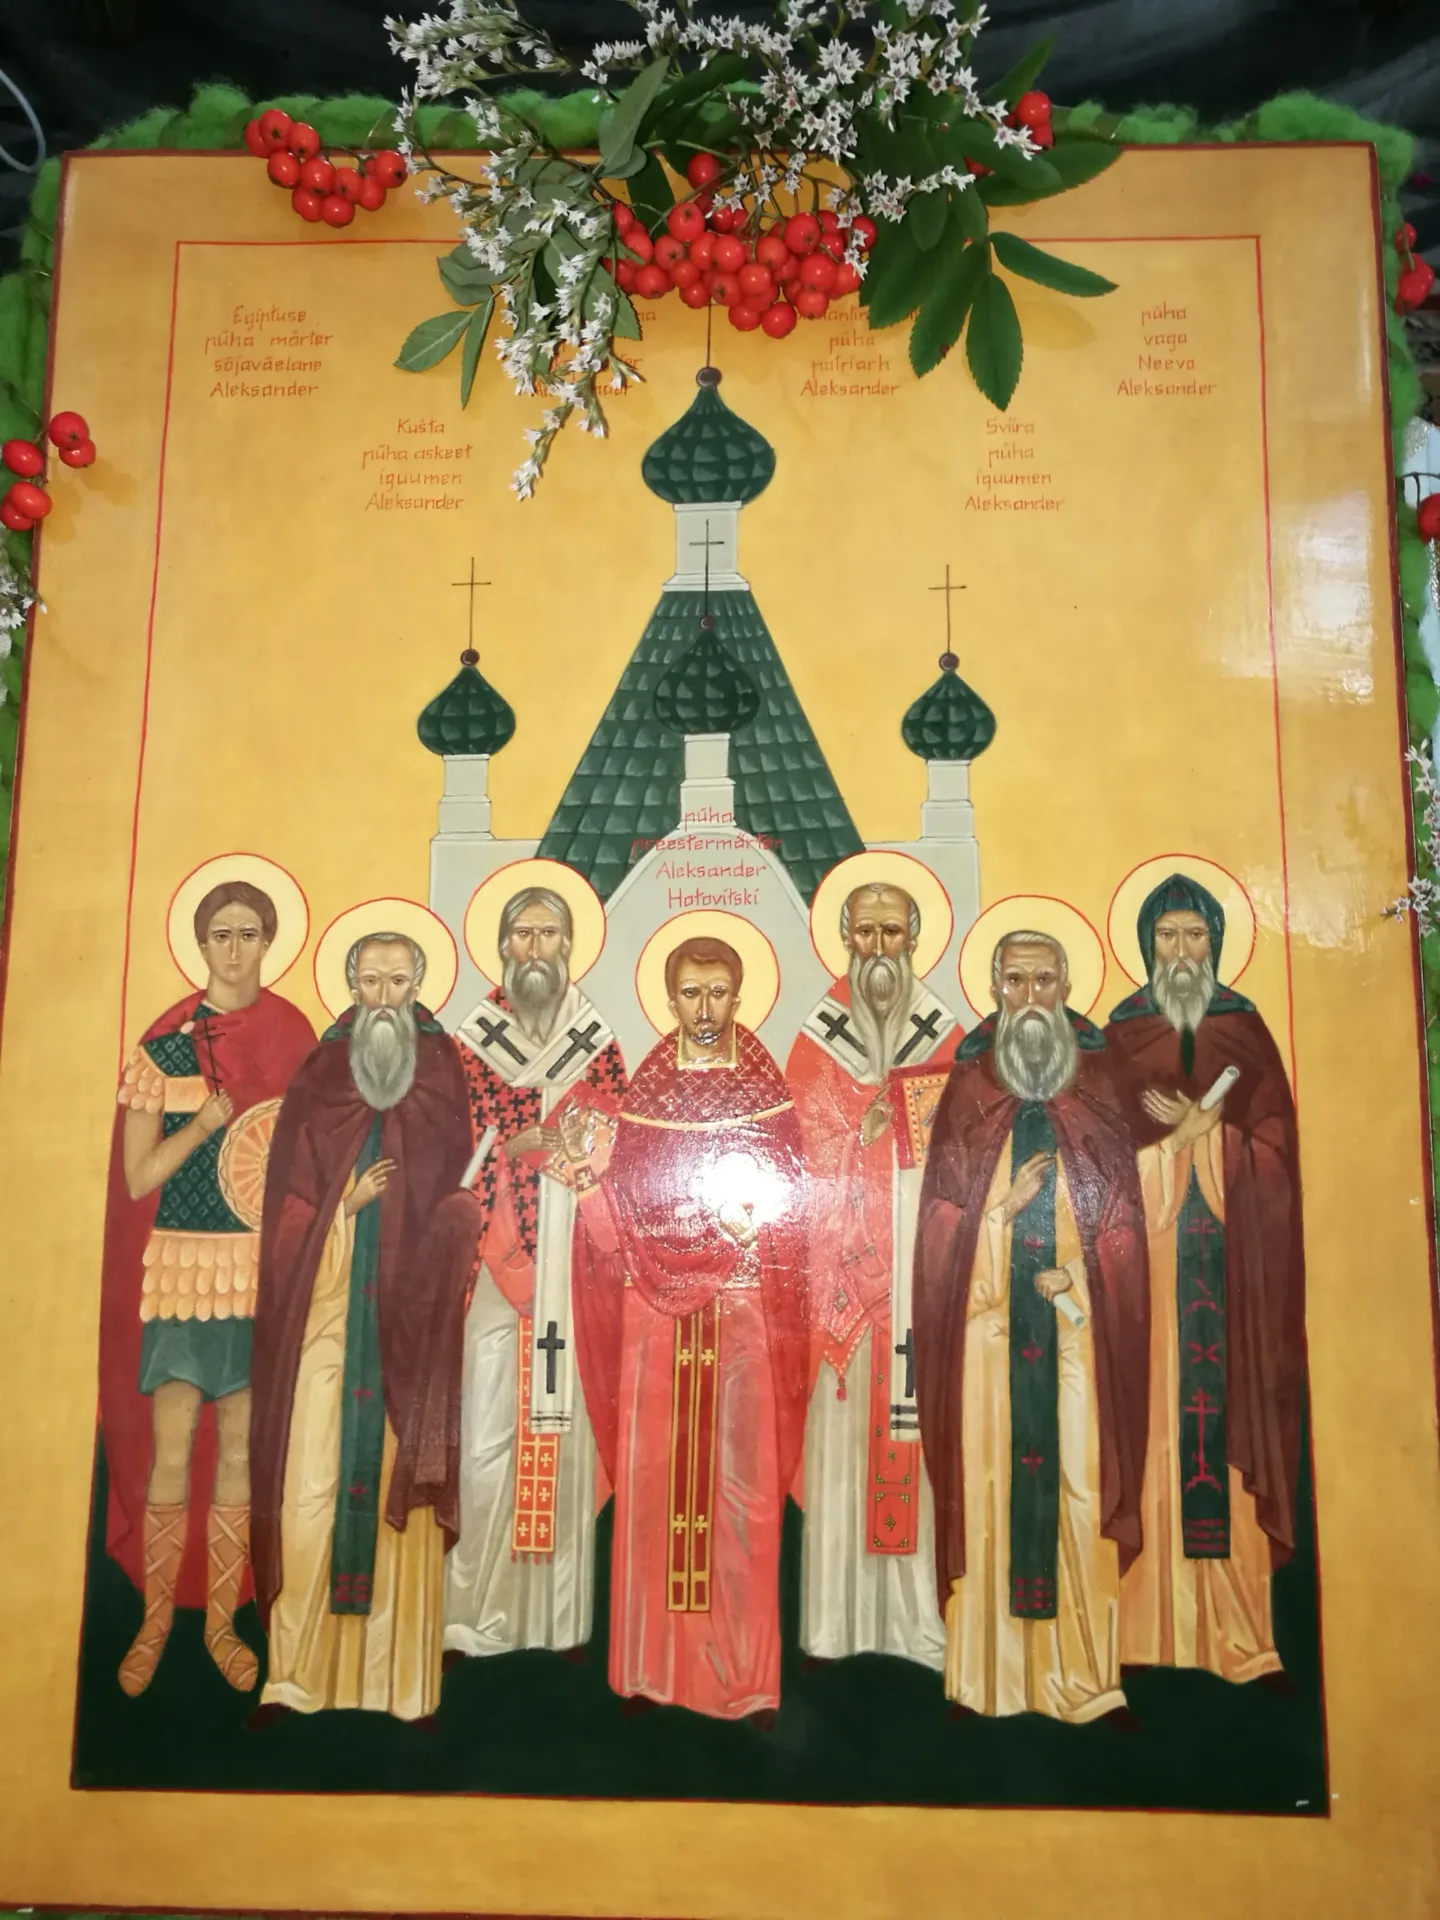 Pühade Aleksandrite ikoon augustis 2018